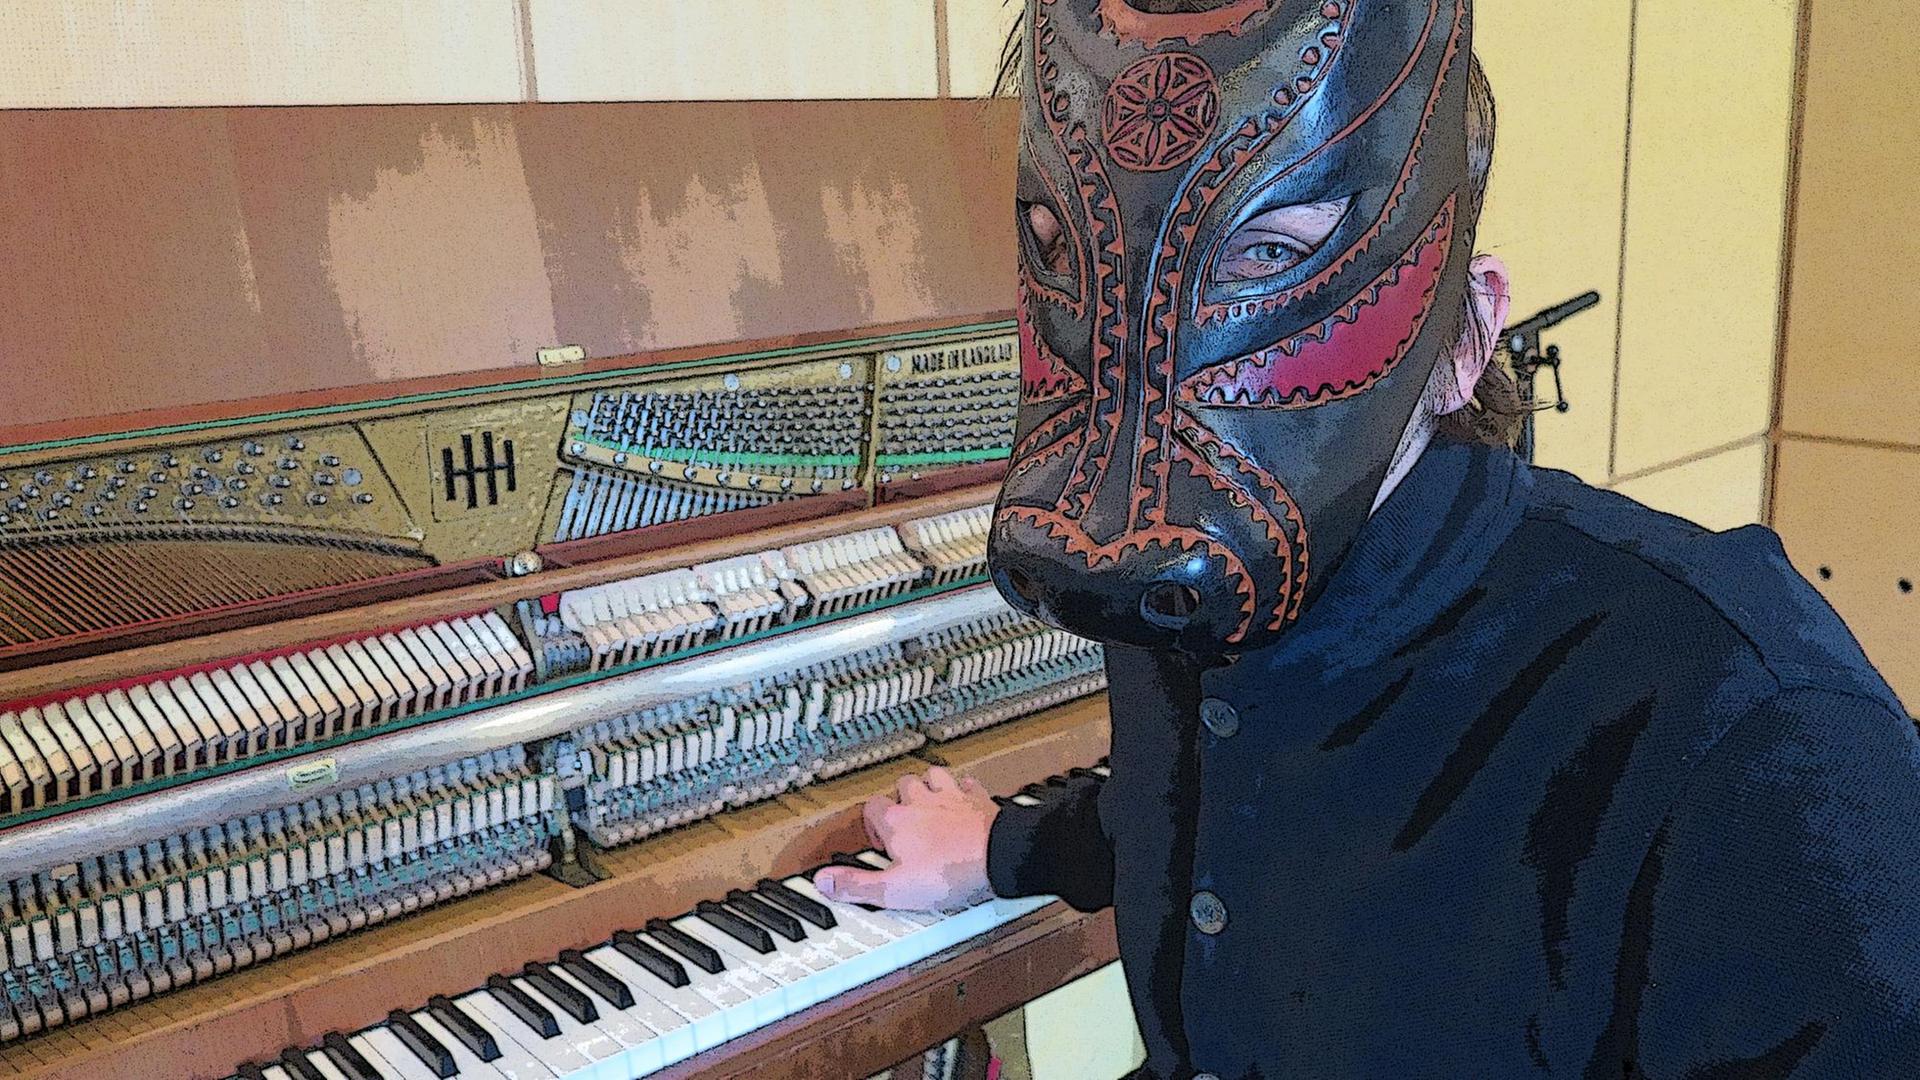 Kunstfigur "Lambert", der Pianist hinter der Maske